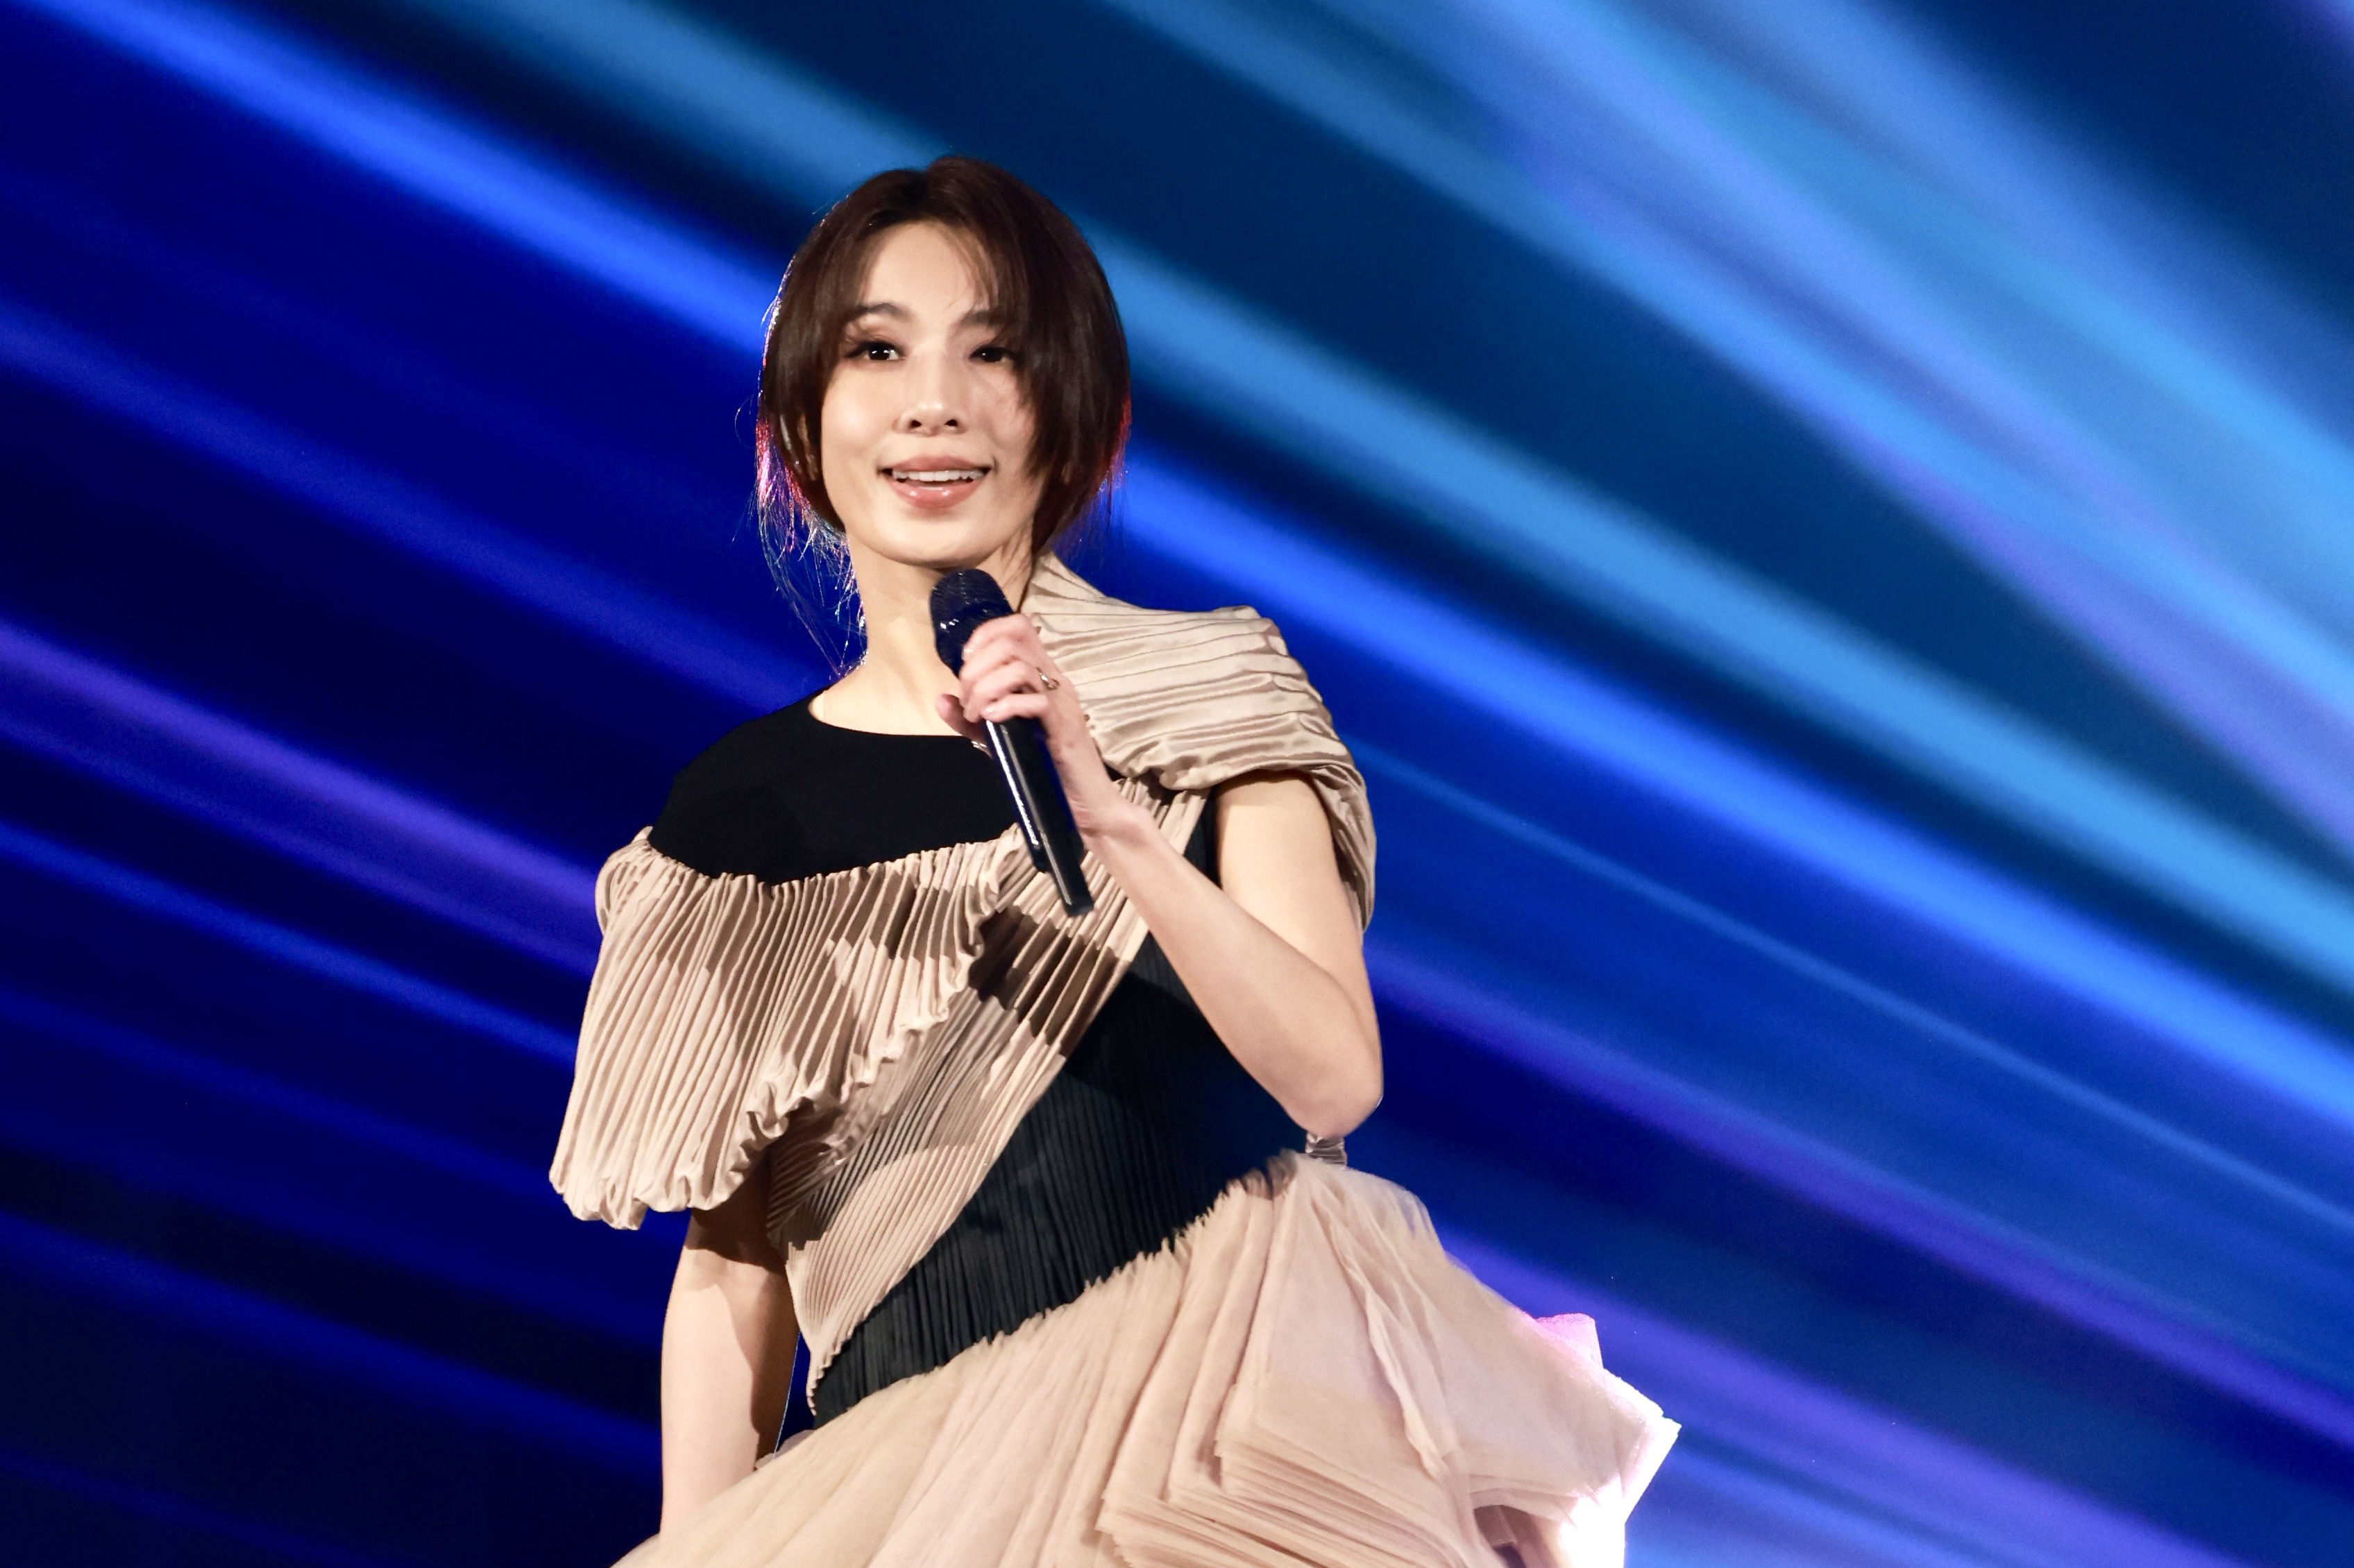 La représentation de Tian Fuzhen sur le continent a été annulée et sa mère n’a pas supporté de s’exprimer | Boo Xingwen Entertainment News |